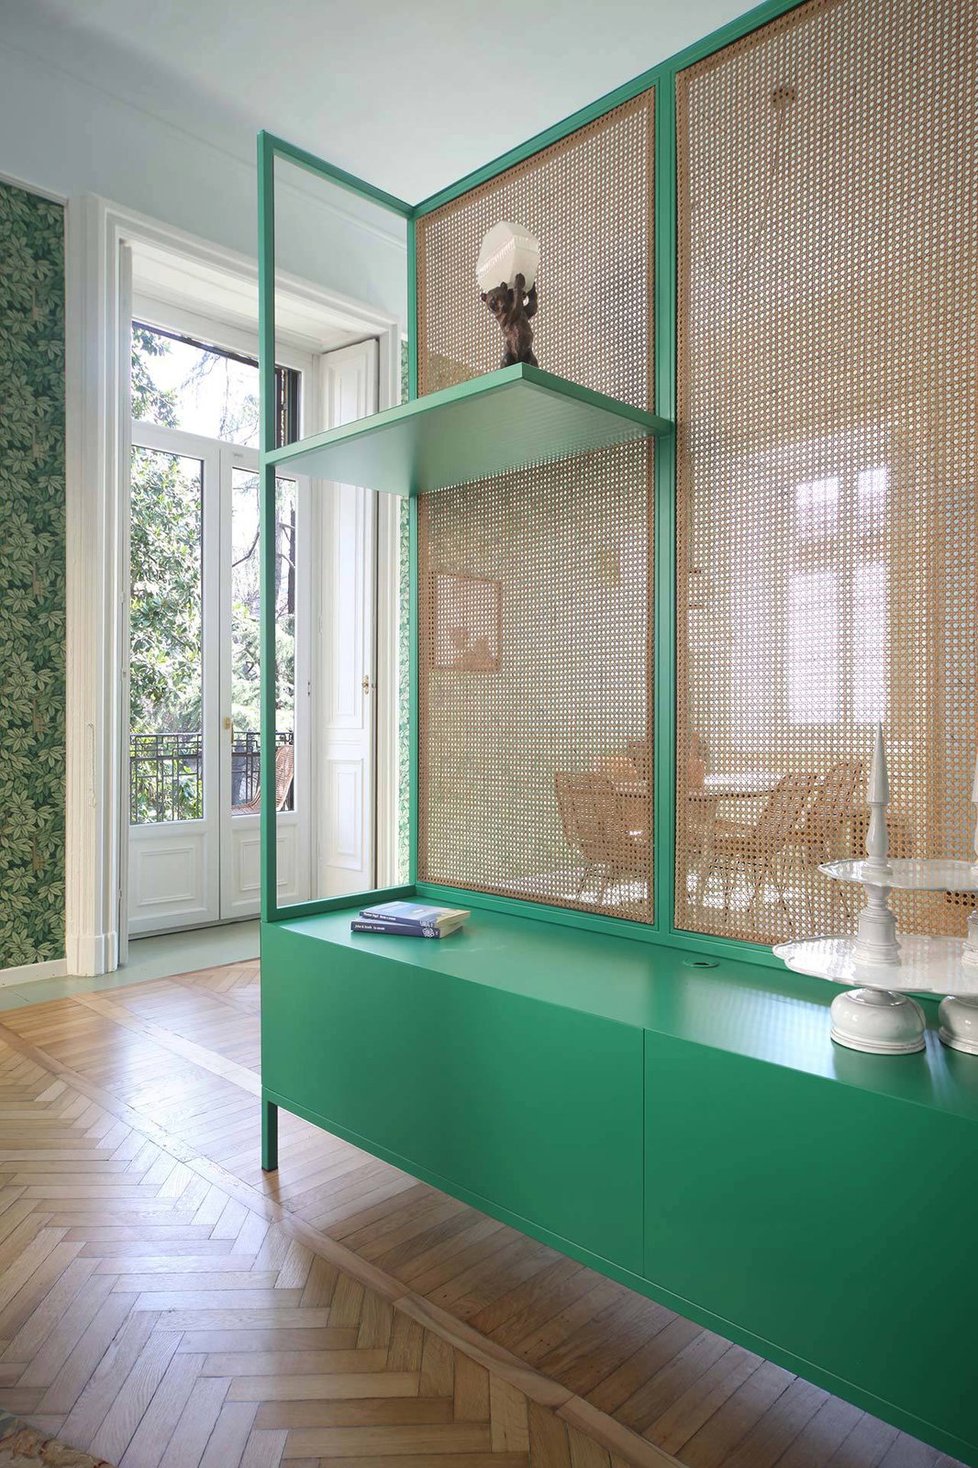 Citlivá rekonstrukce vnesla do historického apartmánu v Miláně retro design a přírodu.